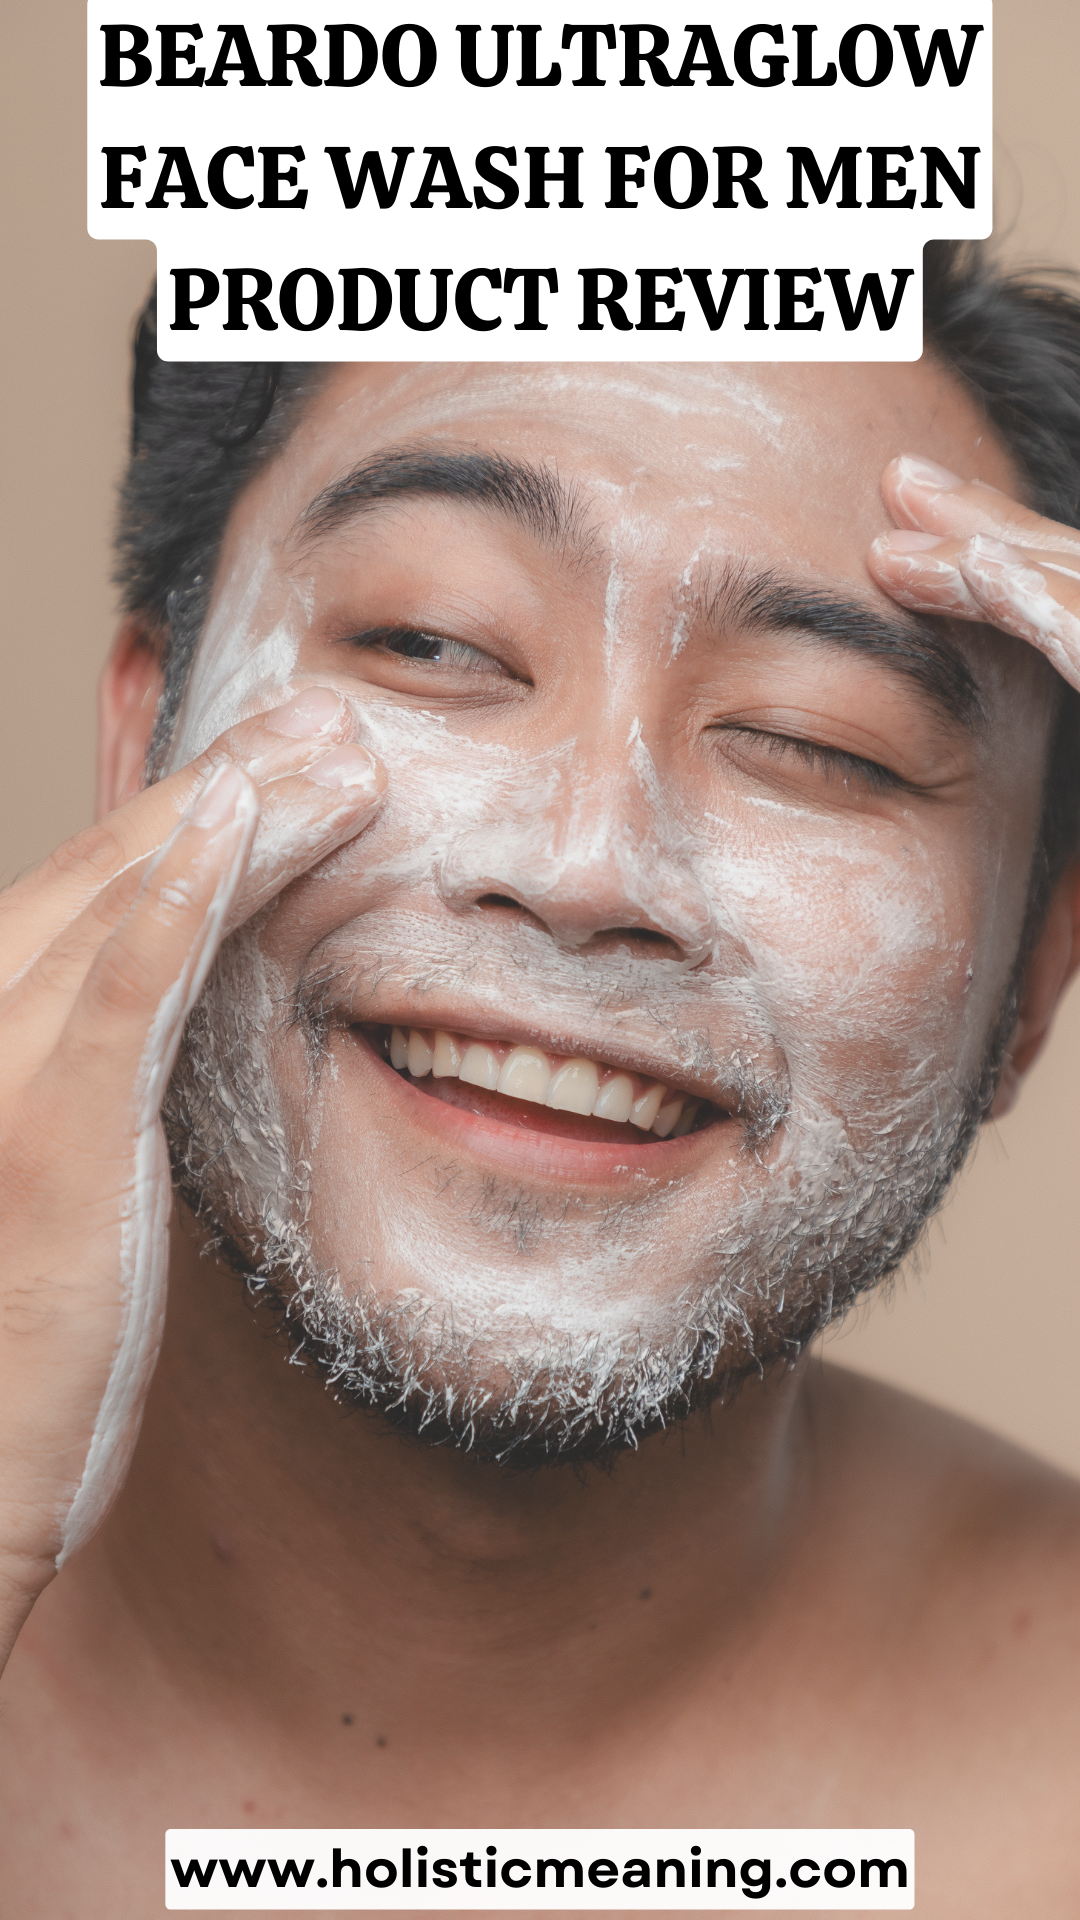 Beardo Ultraglow Face Wash for Men Product Review